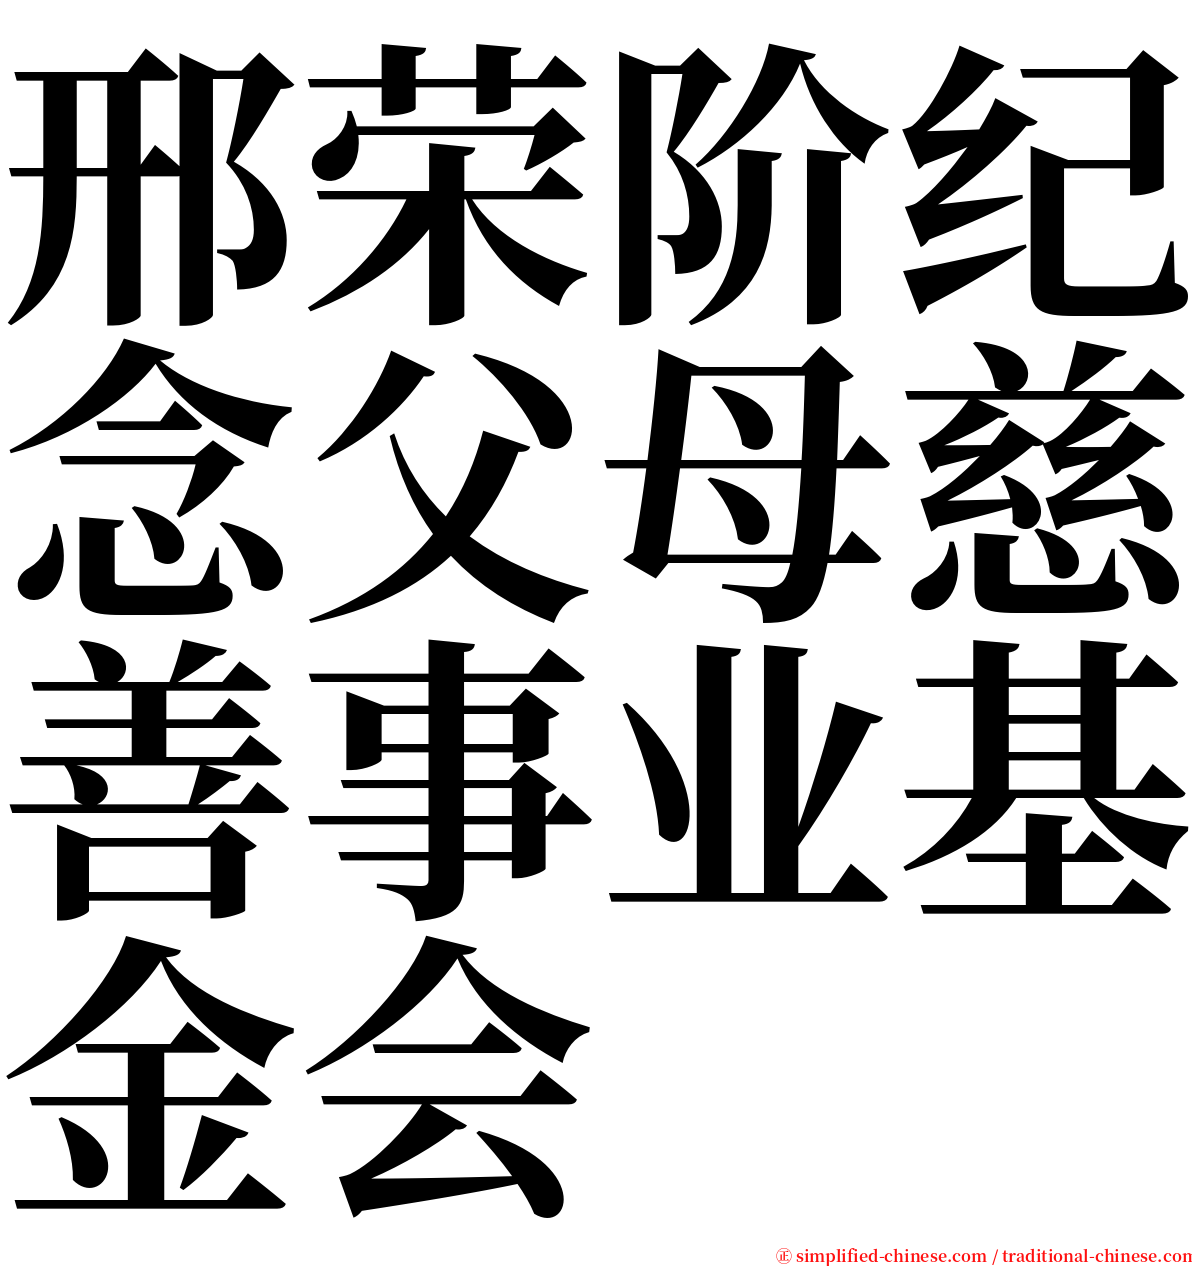 邢荣阶纪念父母慈善事业基金会 serif font